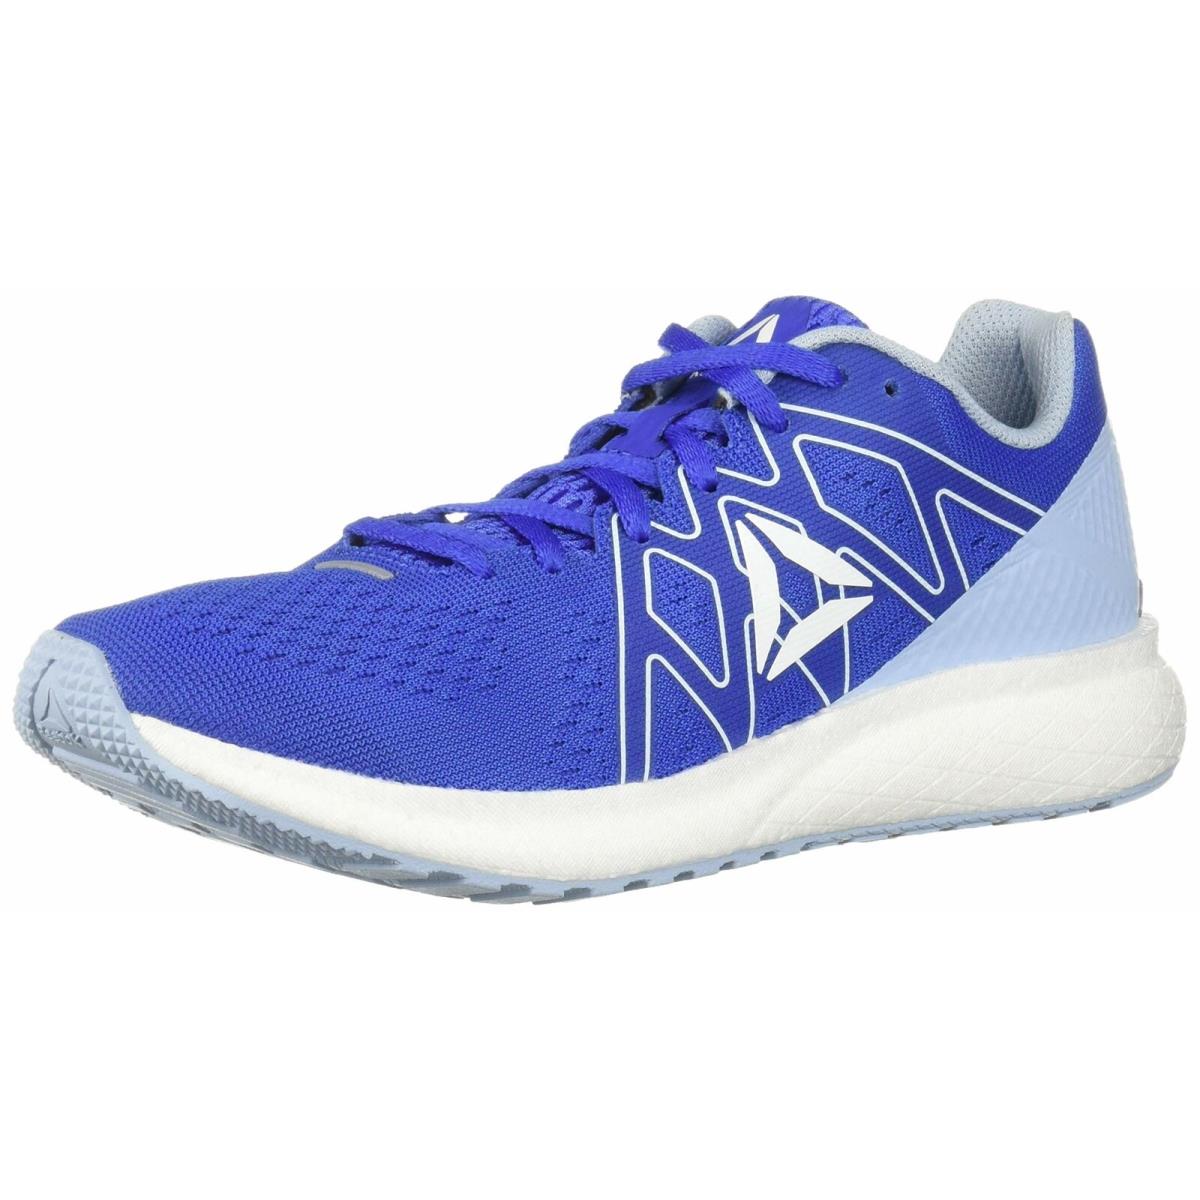 Reebok Women`s Forever Floatride Energy Sneaker Blue/white/denim DV3879 9.5M - Blue